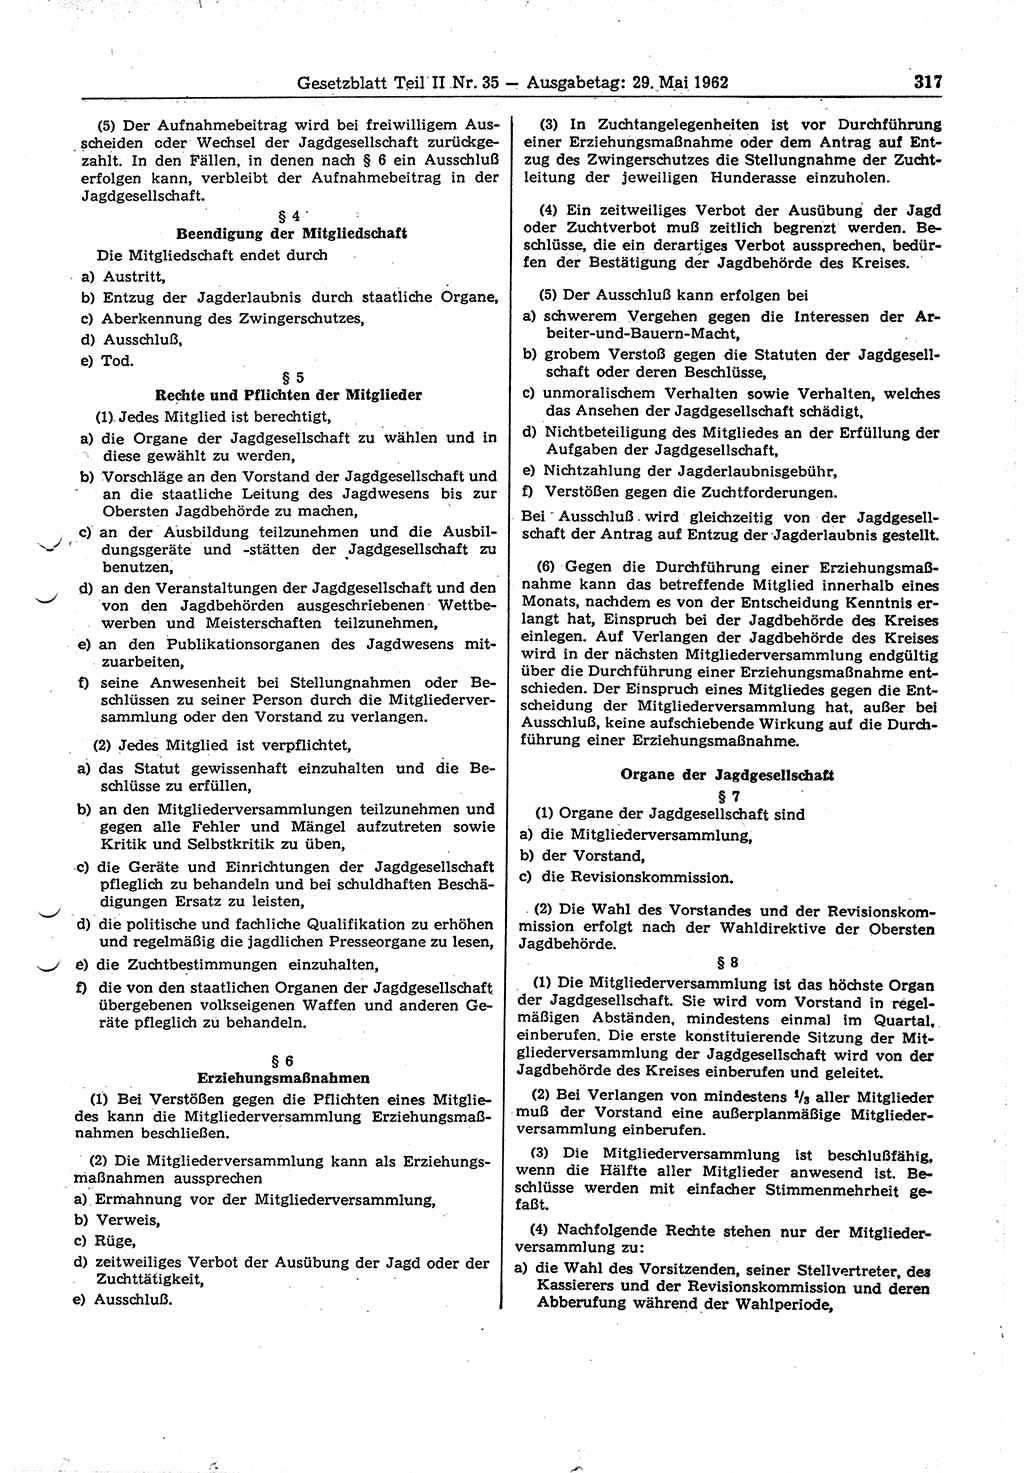 Gesetzblatt (GBl.) der Deutschen Demokratischen Republik (DDR) Teil ⅠⅠ 1962, Seite 317 (GBl. DDR ⅠⅠ 1962, S. 317)